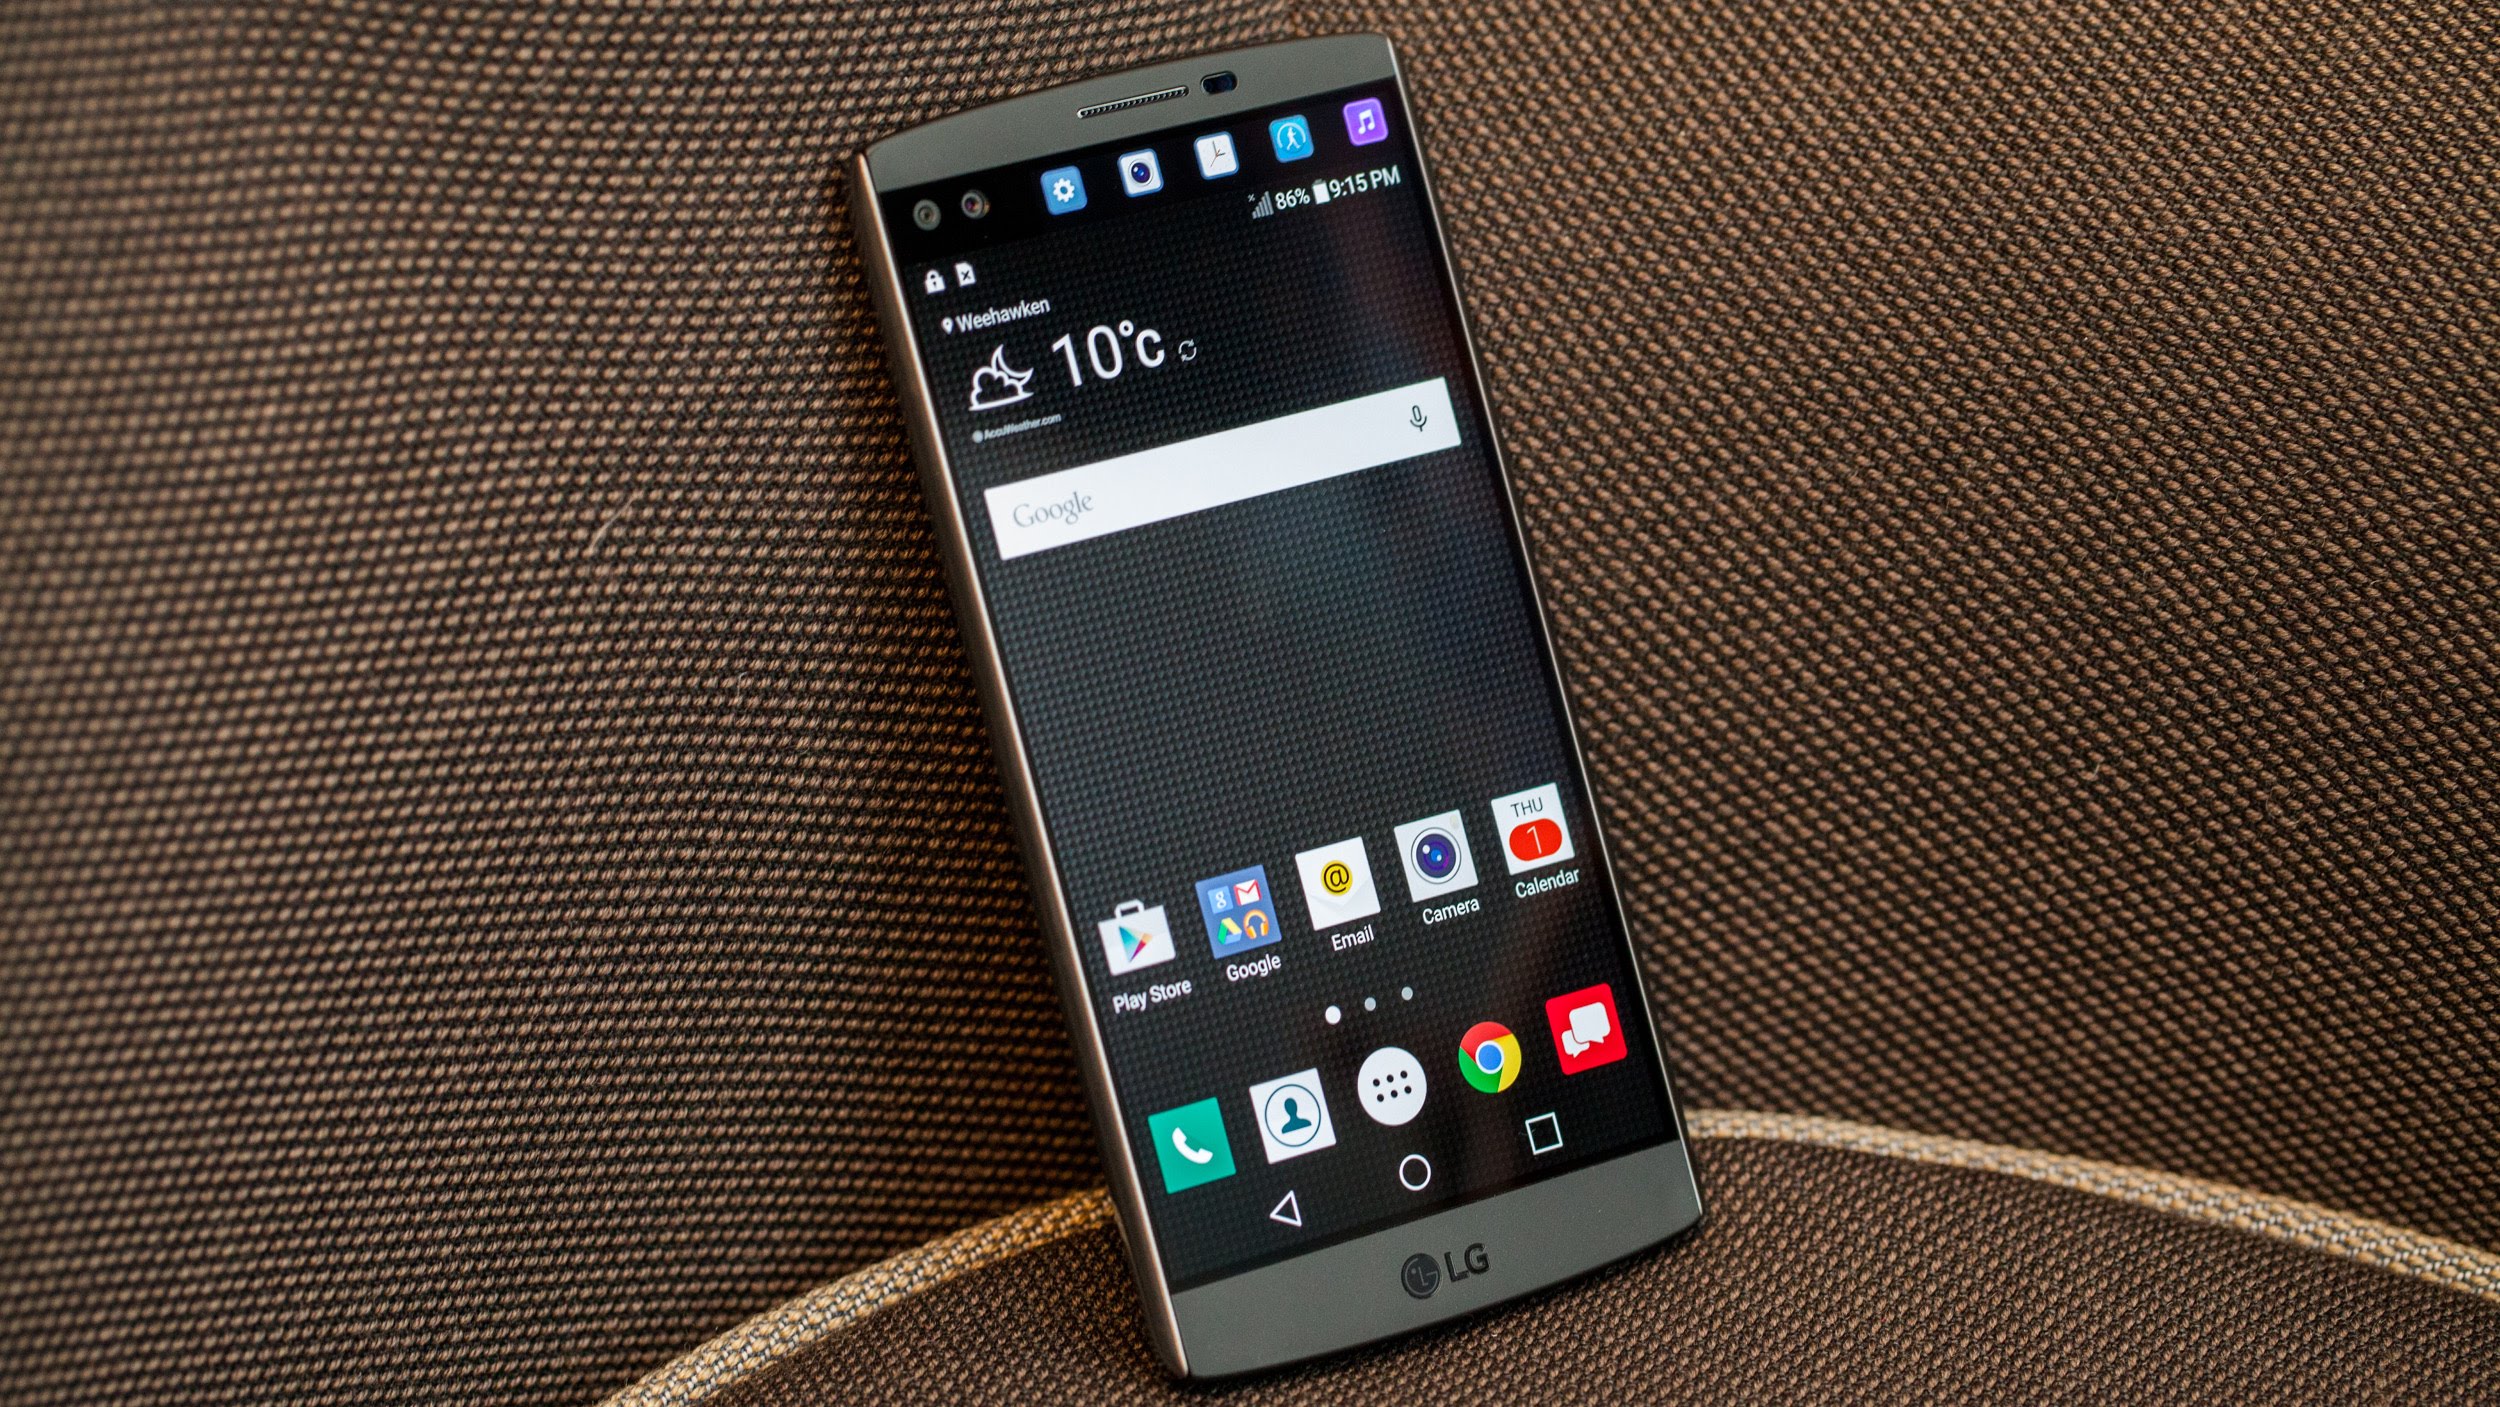 Владельцы LG V10 и LG G4 смогут обновить ОС своих устройств до Android 7.0 Nougat